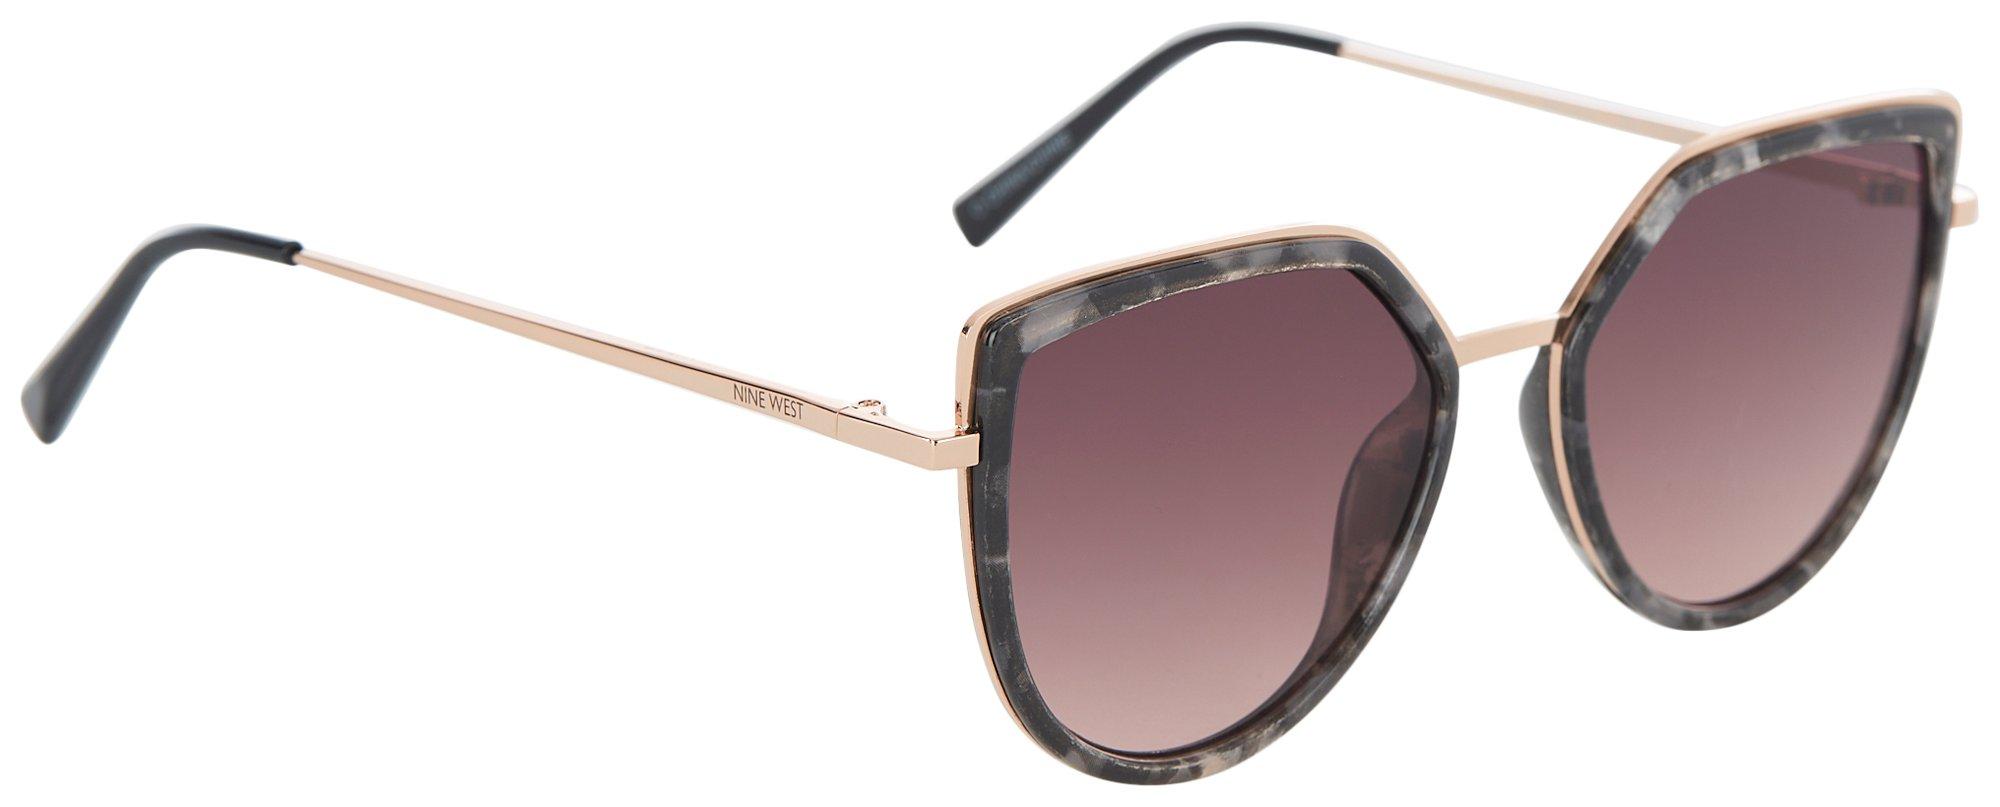 Womens Cateye Tortoiseshell Metal Sunglasses